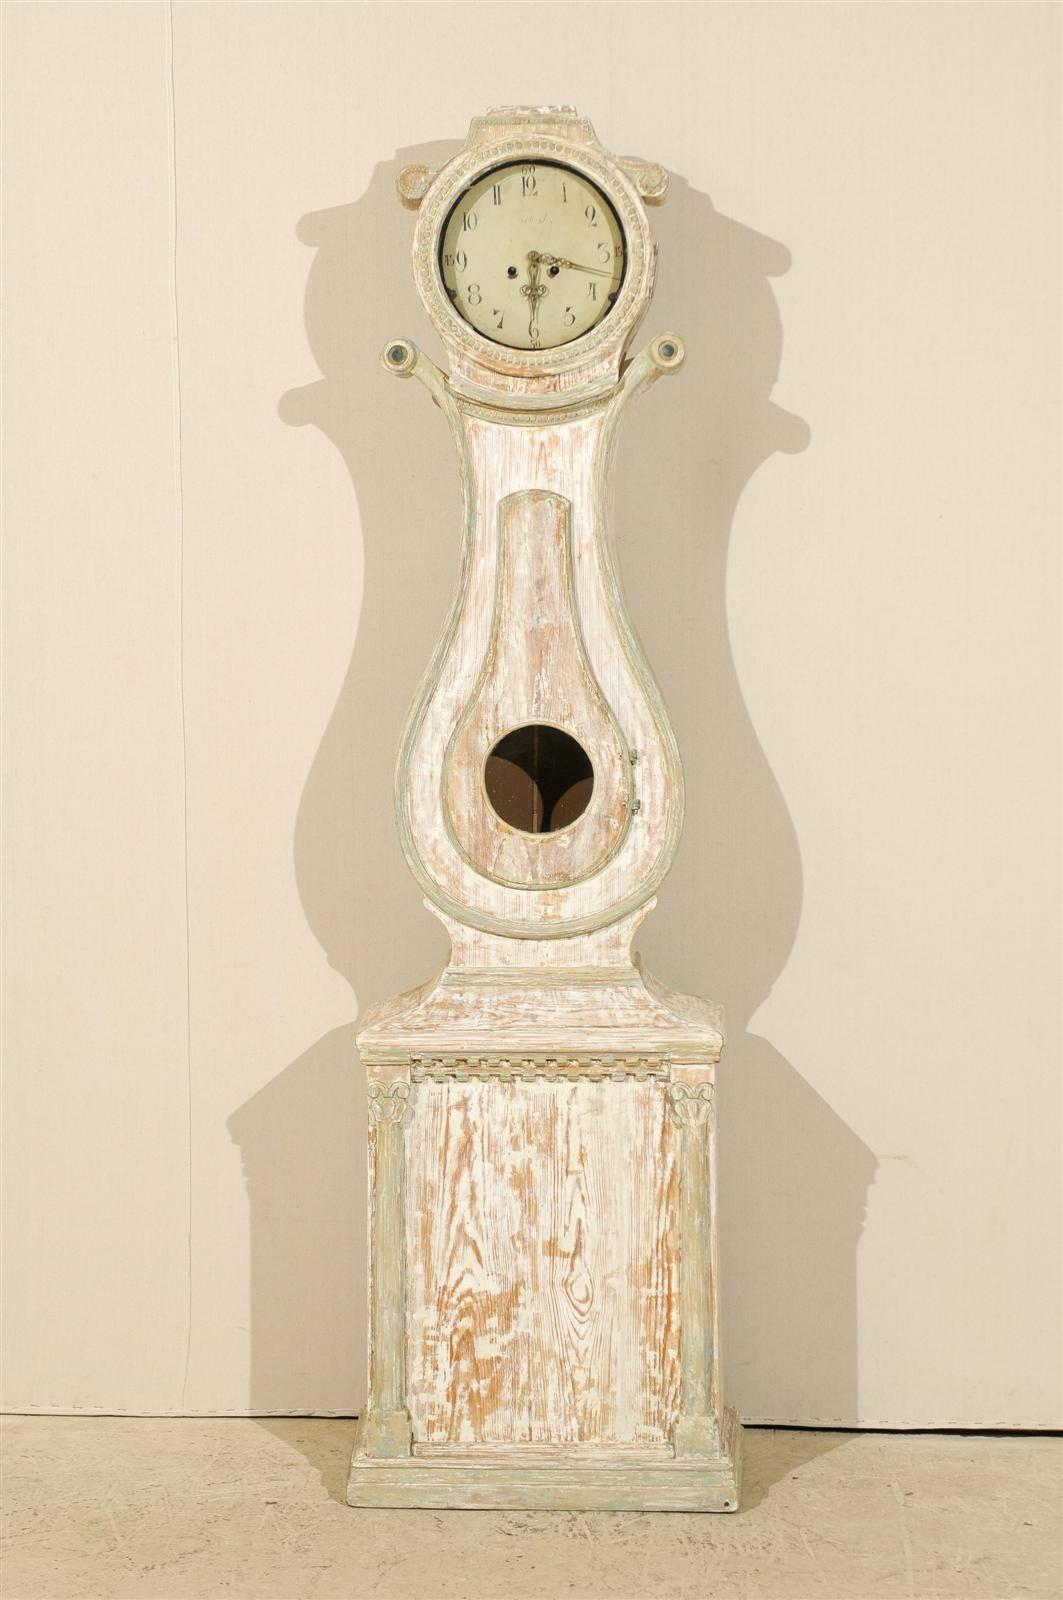 Une horloge suédoise en bois peint du 19ème siècle avec des volutes de chaque côté de la tête. Cette horloge présente un corps en forme de lyre et une base rectangulaire flanquée de deux colonnes corinthiennes stylisées. Cette horloge a conservé sa